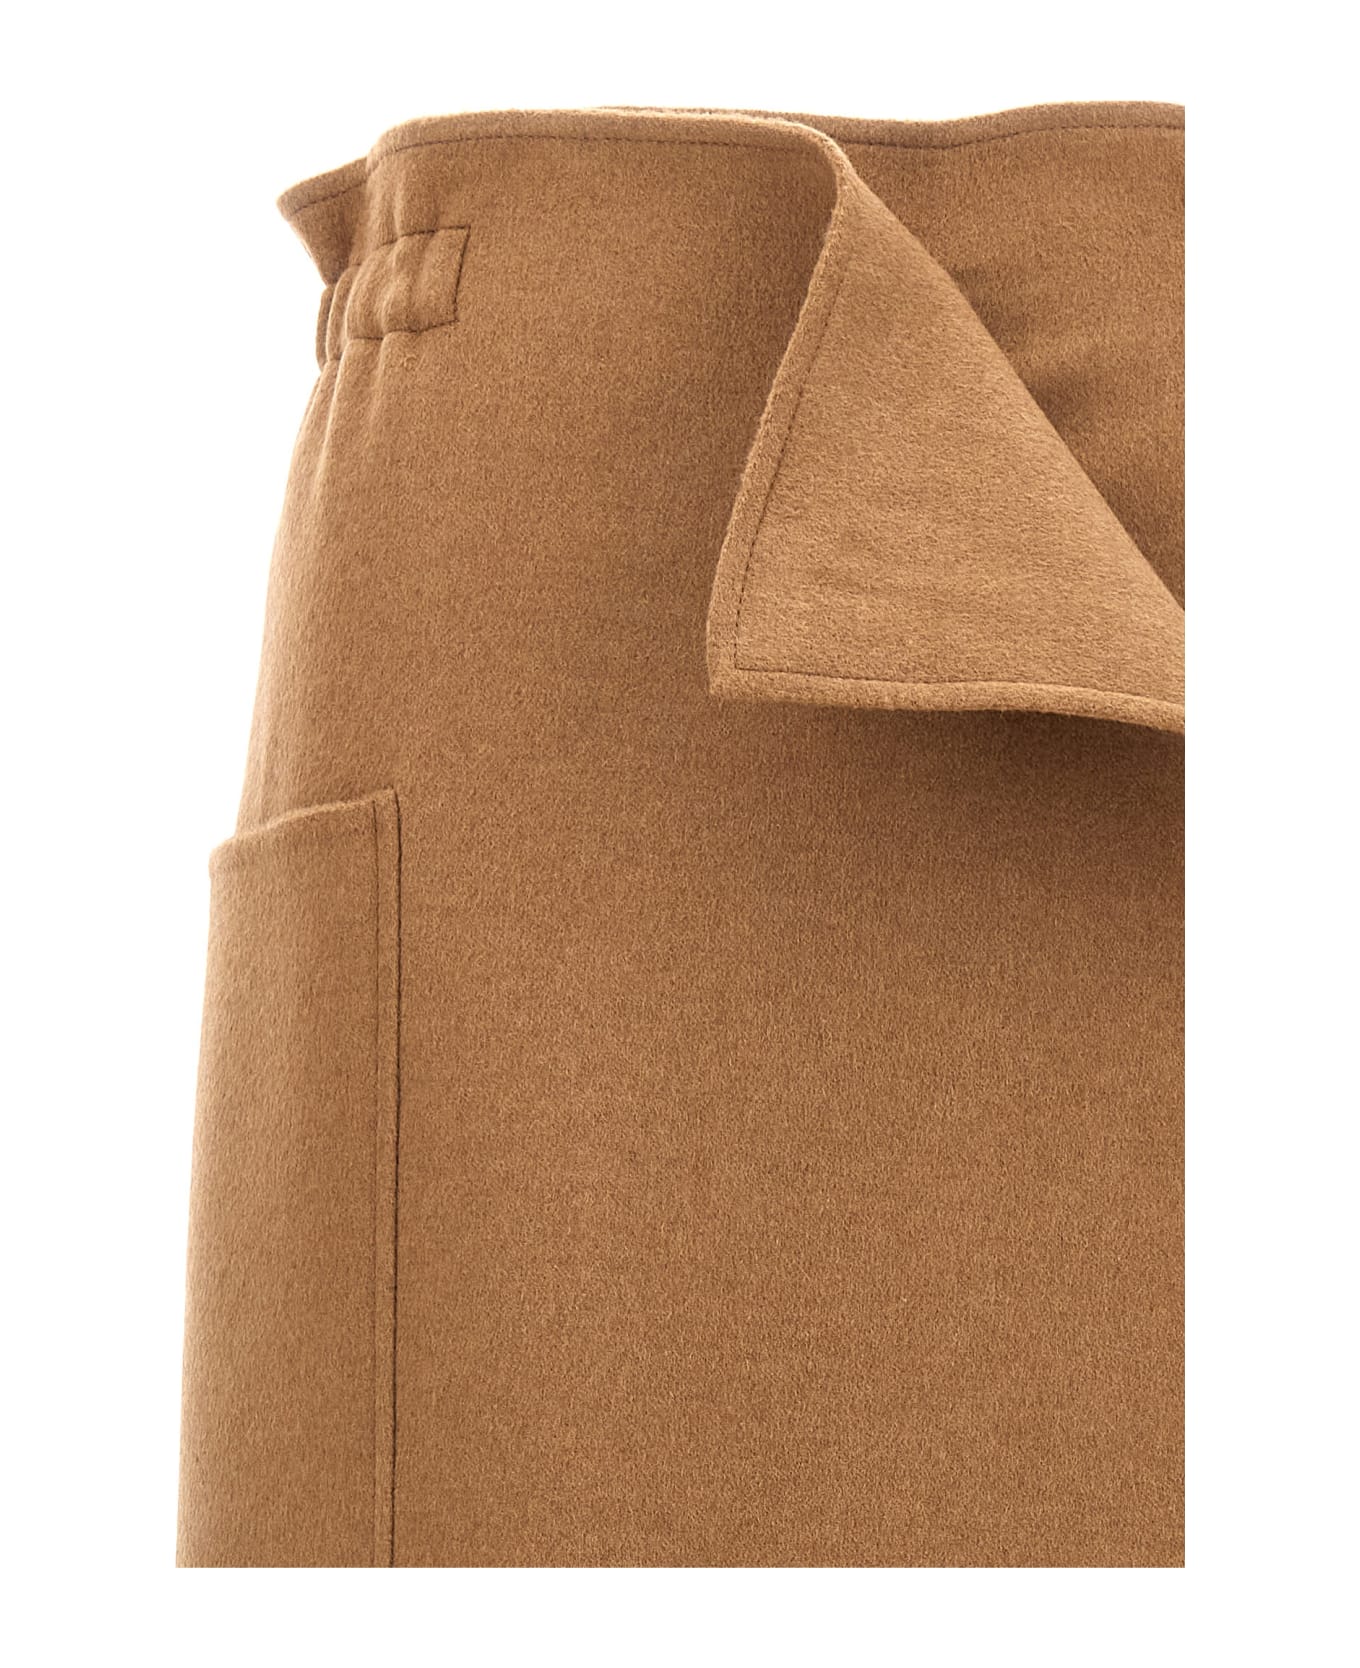 Max Mara 'carbone' Long Skirt - Brown